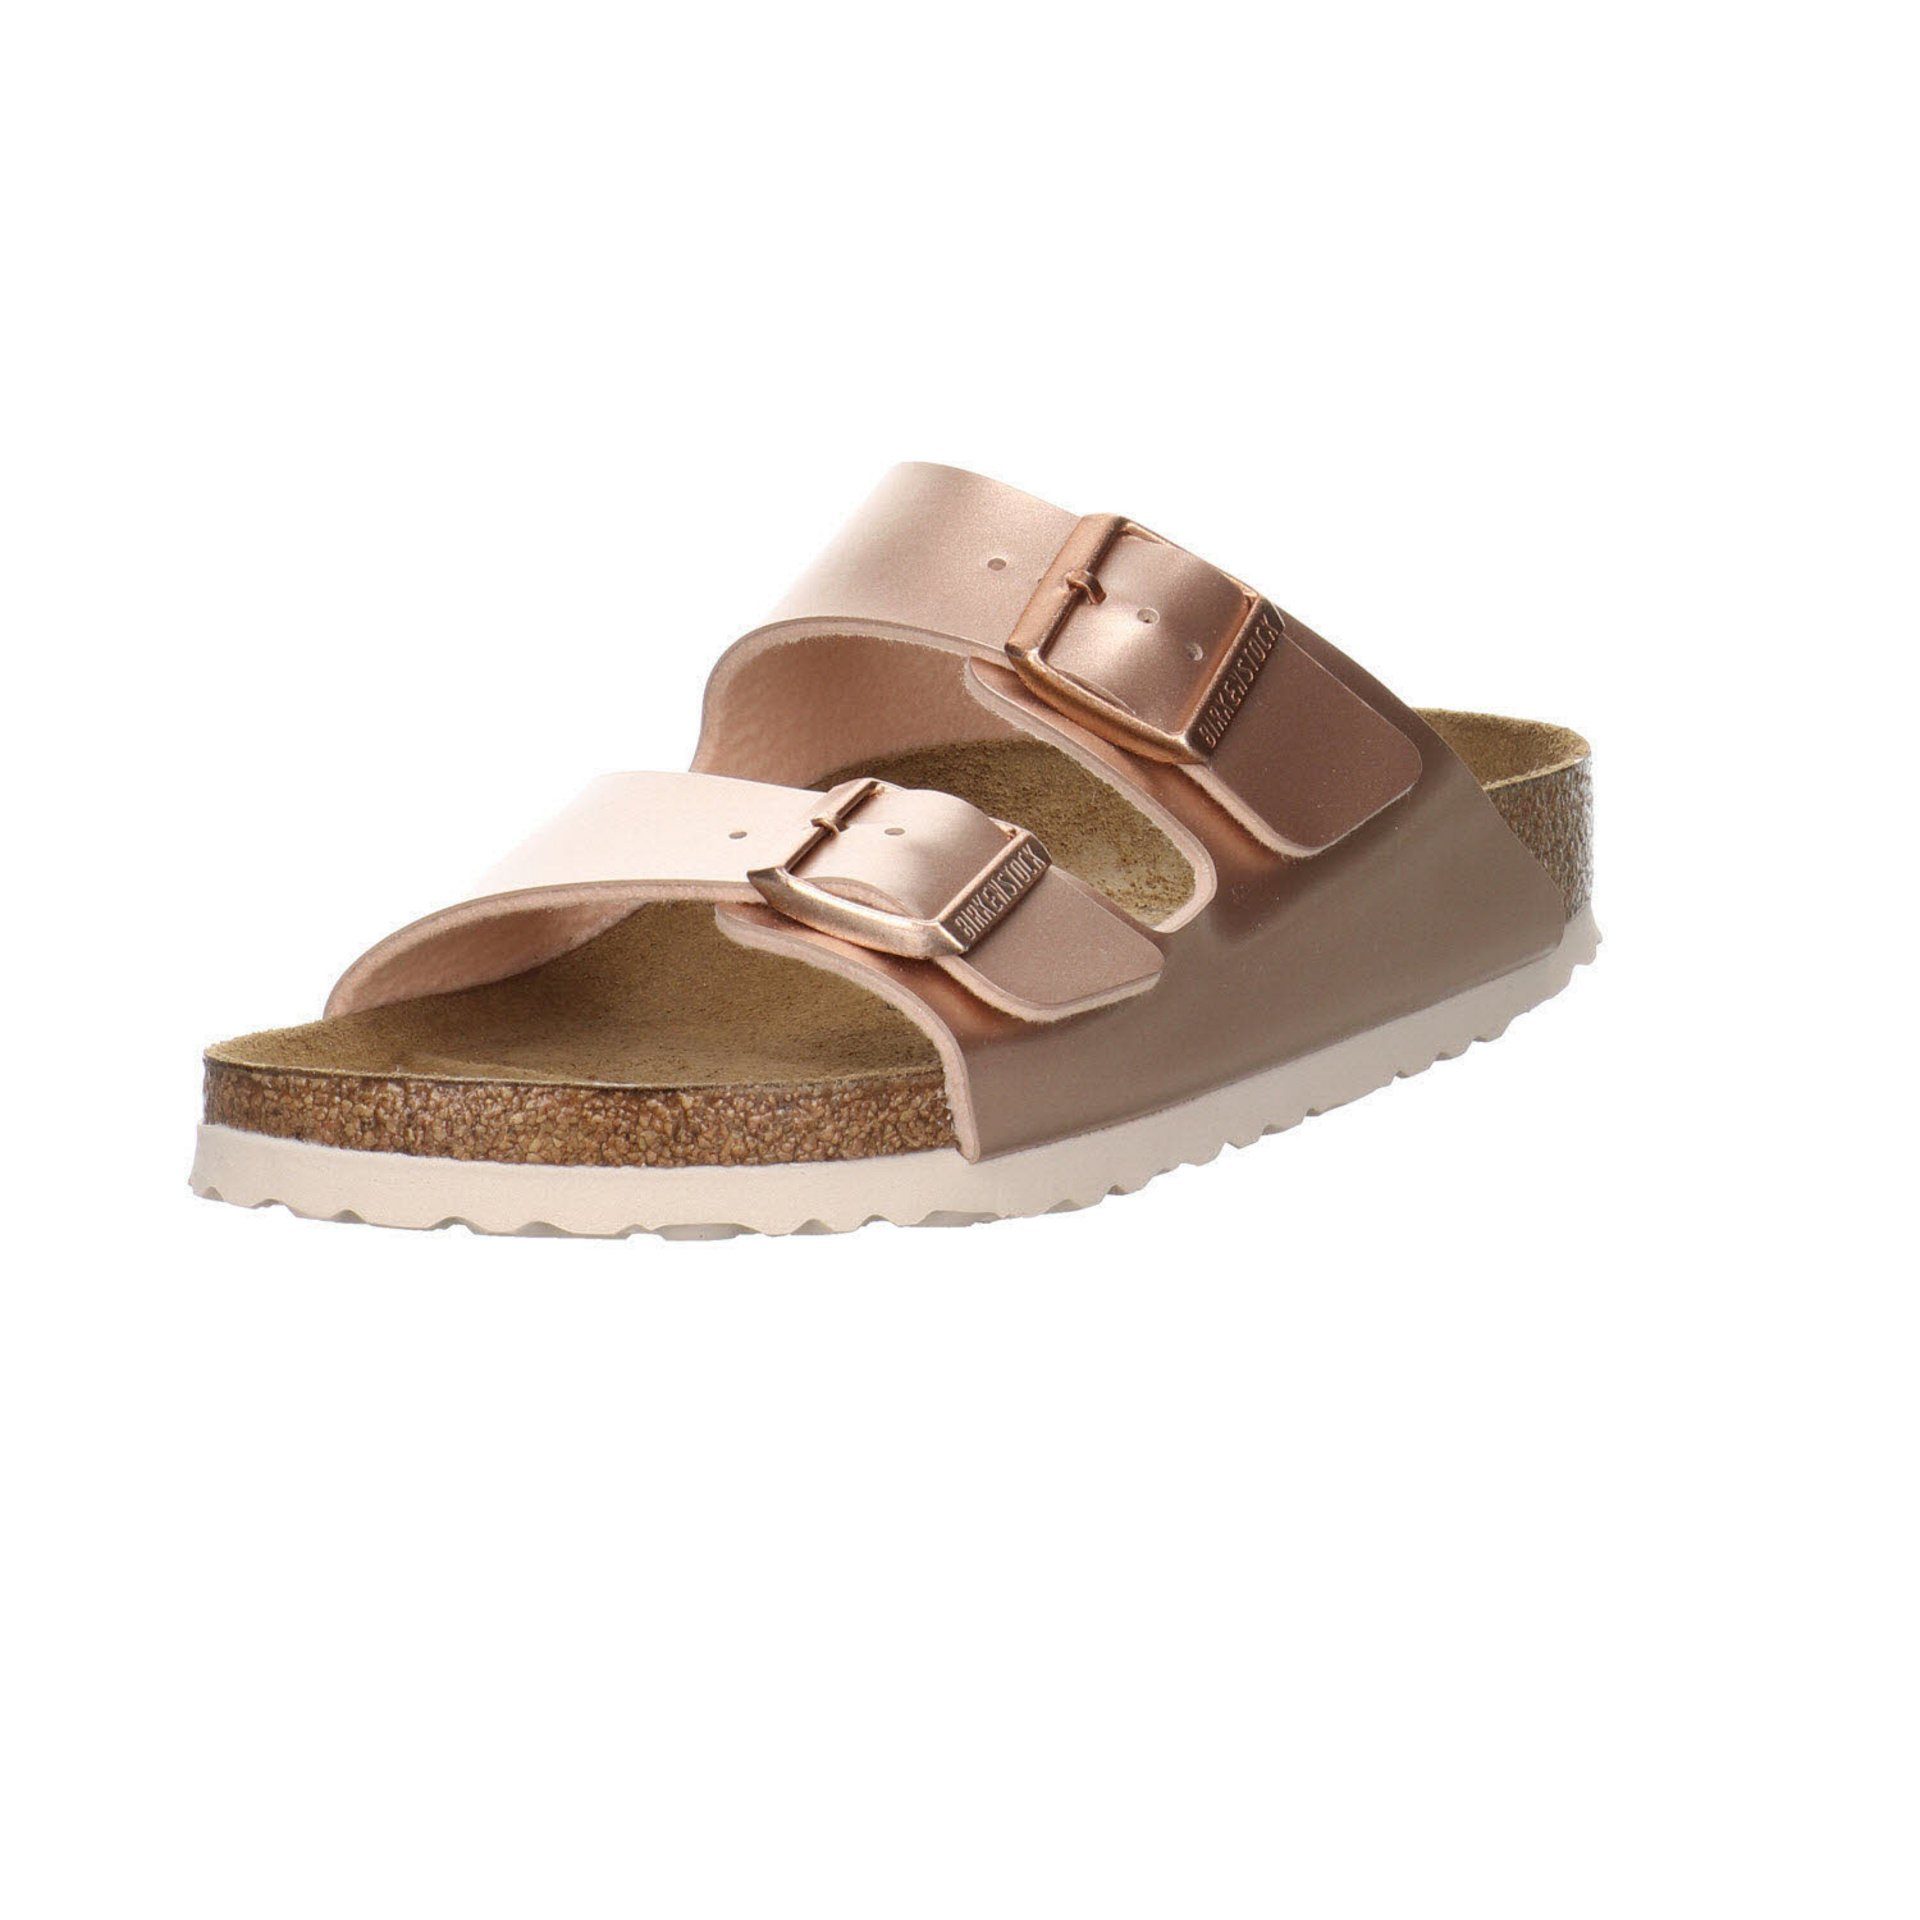 Birkenstock »Mädchen Clogs Pantoletten Schuhe« Sandale online kaufen | OTTO